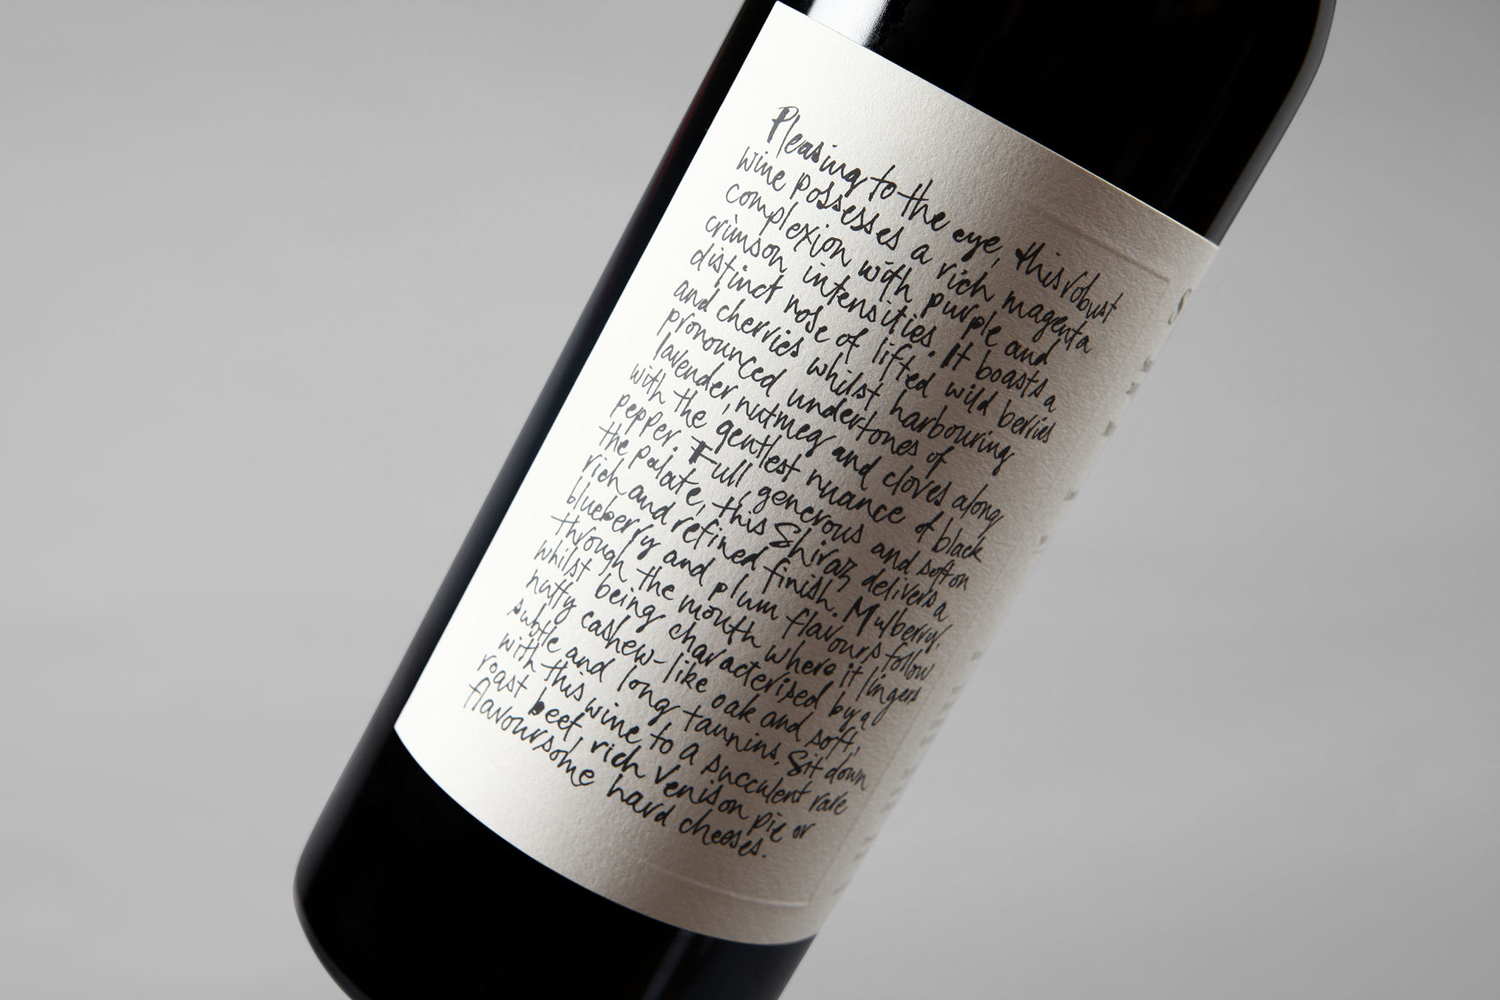 Australian Design – Niche Wine Co. — Somm by Frost, Sydney